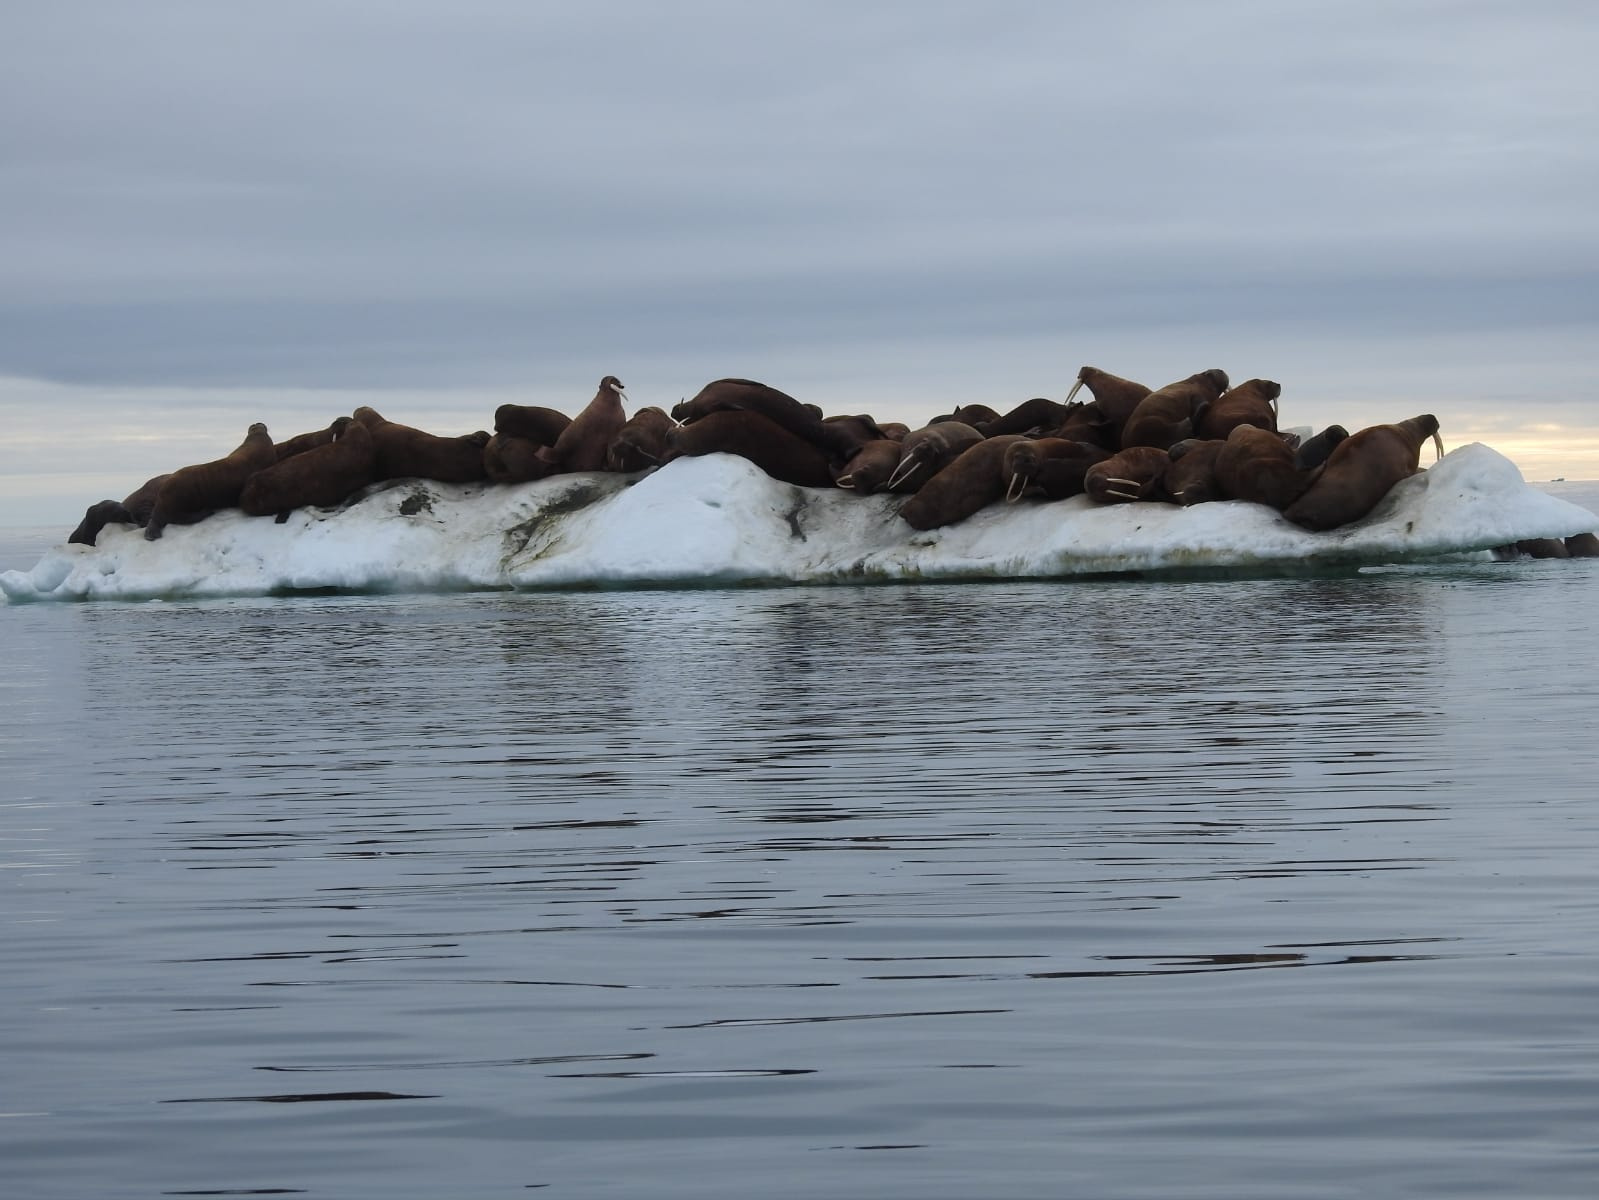 Двоих моржей снабдили датчиками, чтобы точно выяснить их маршруты по воде. Фото: Павел Кулемеев